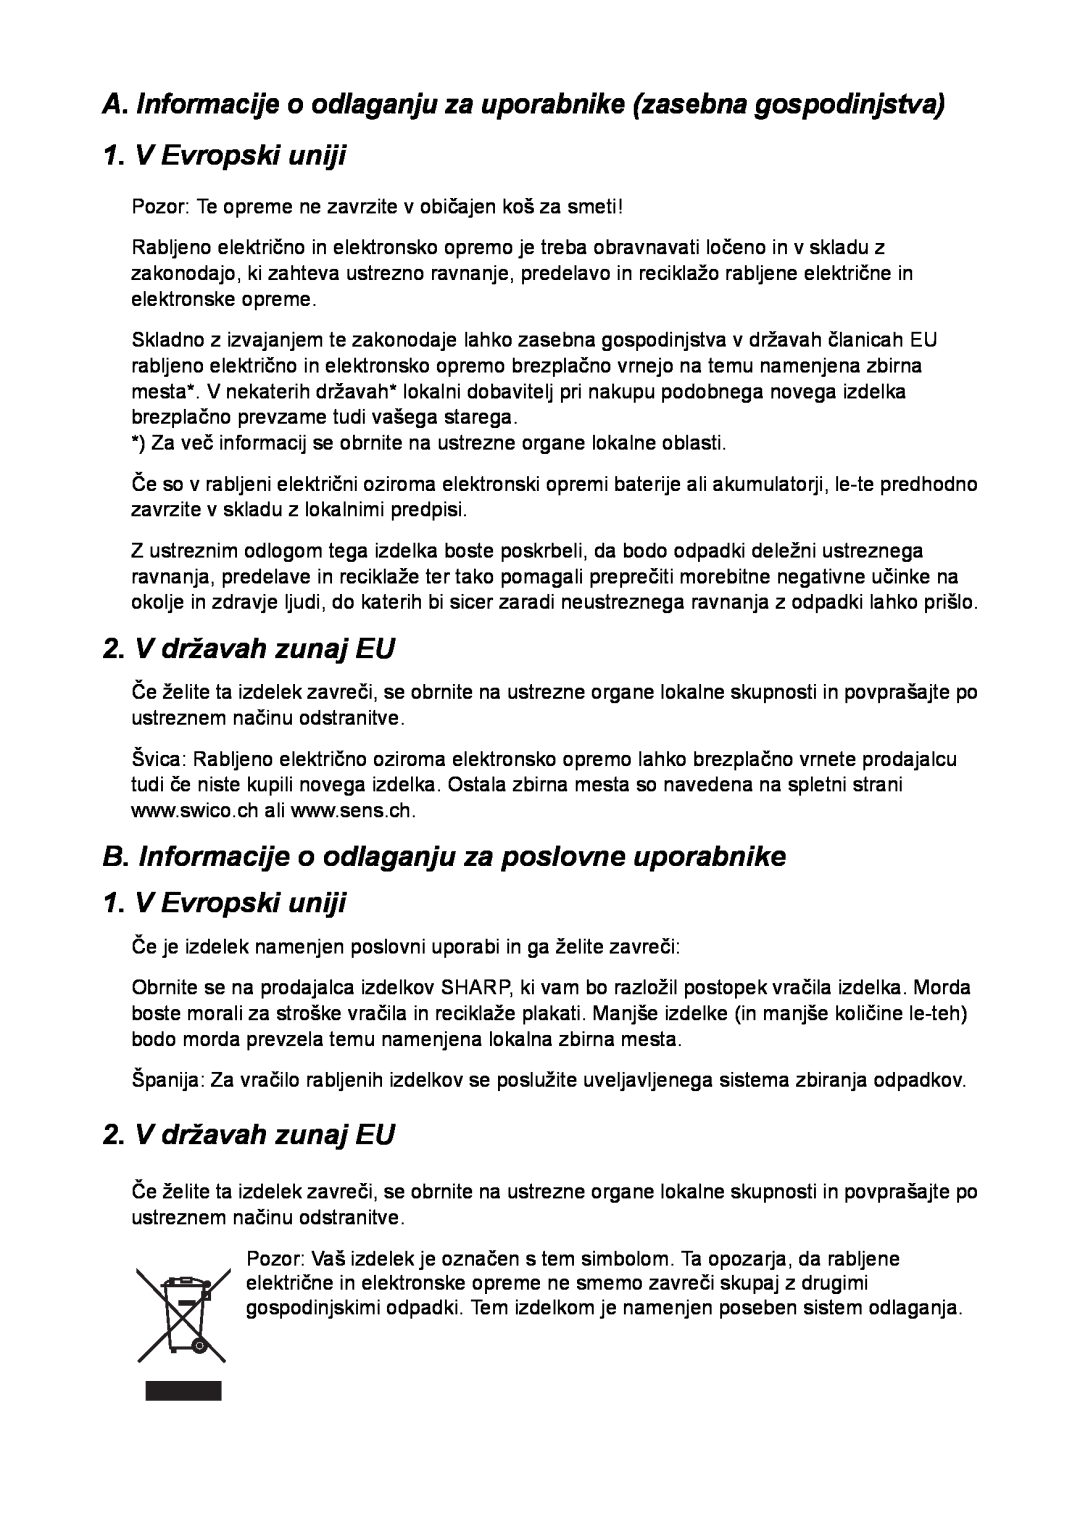 Sharp FO-IS115N operation manual V državah zunaj EU, B. Informacije o odlaganju za poslovne uporabnike 1. V Evropski uniji 